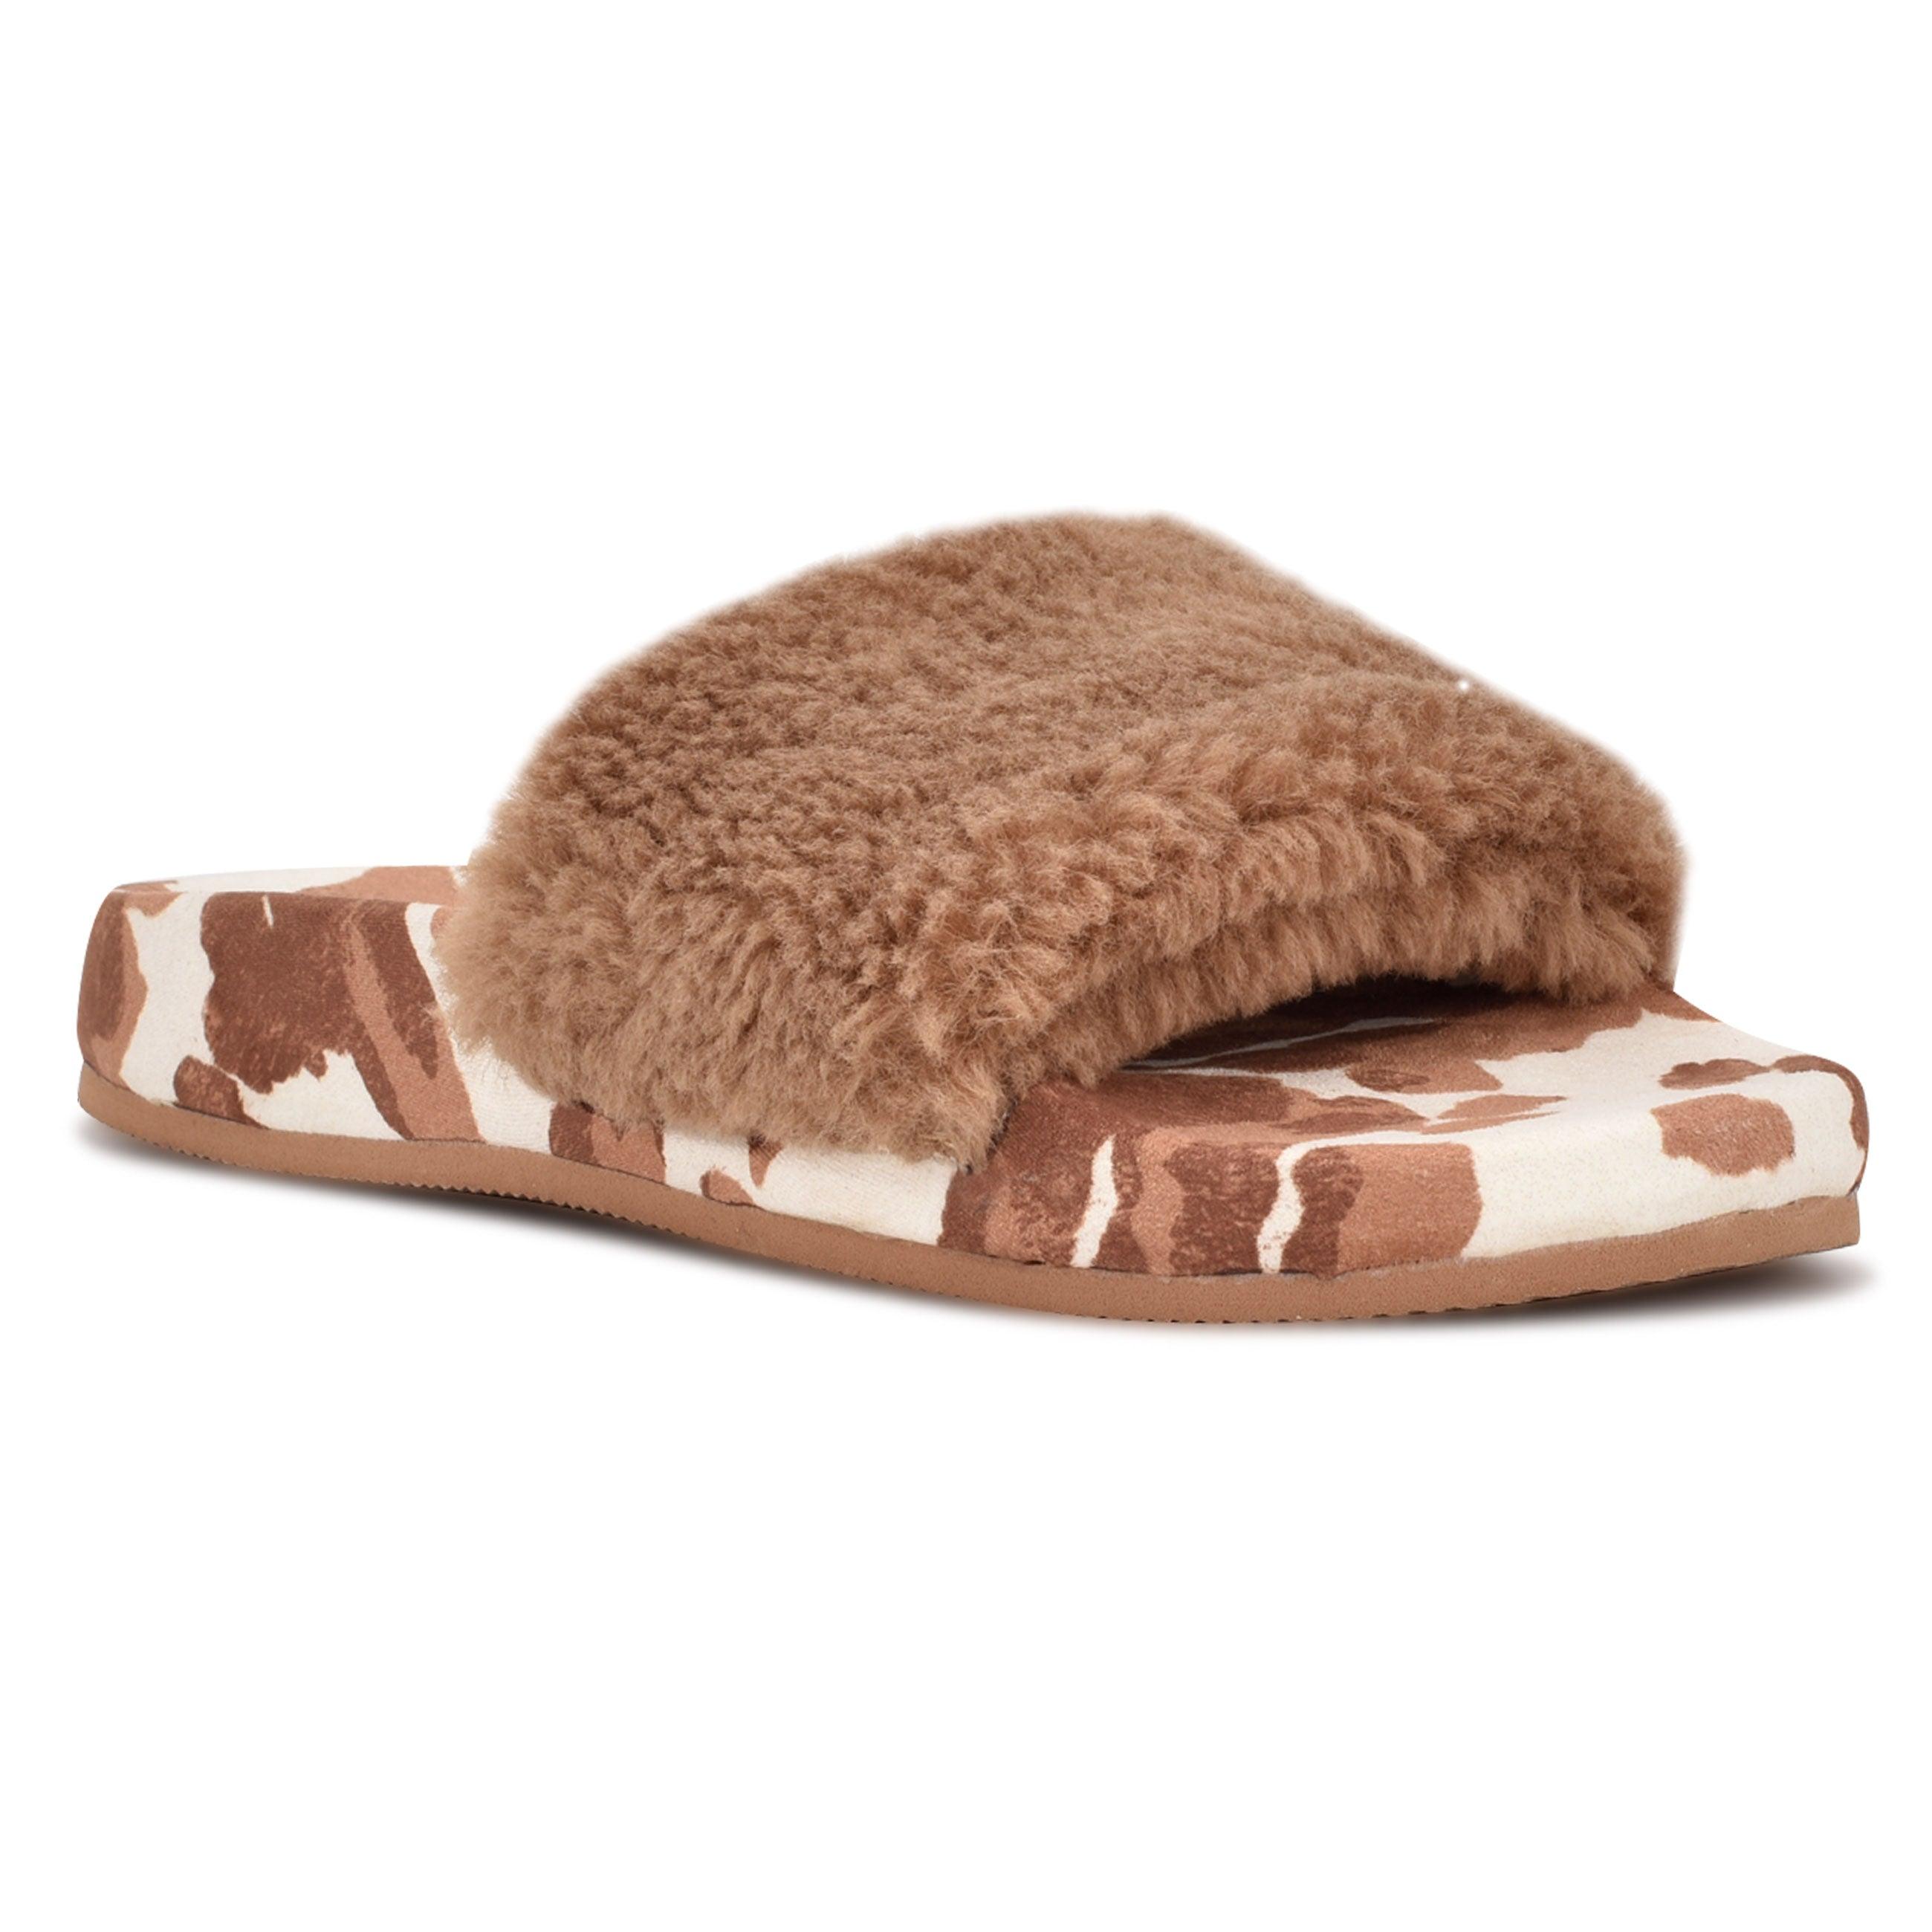 Nine West Staycozy Flat Slide Sandals in Brown/Cow Print (Brown) | Lyst